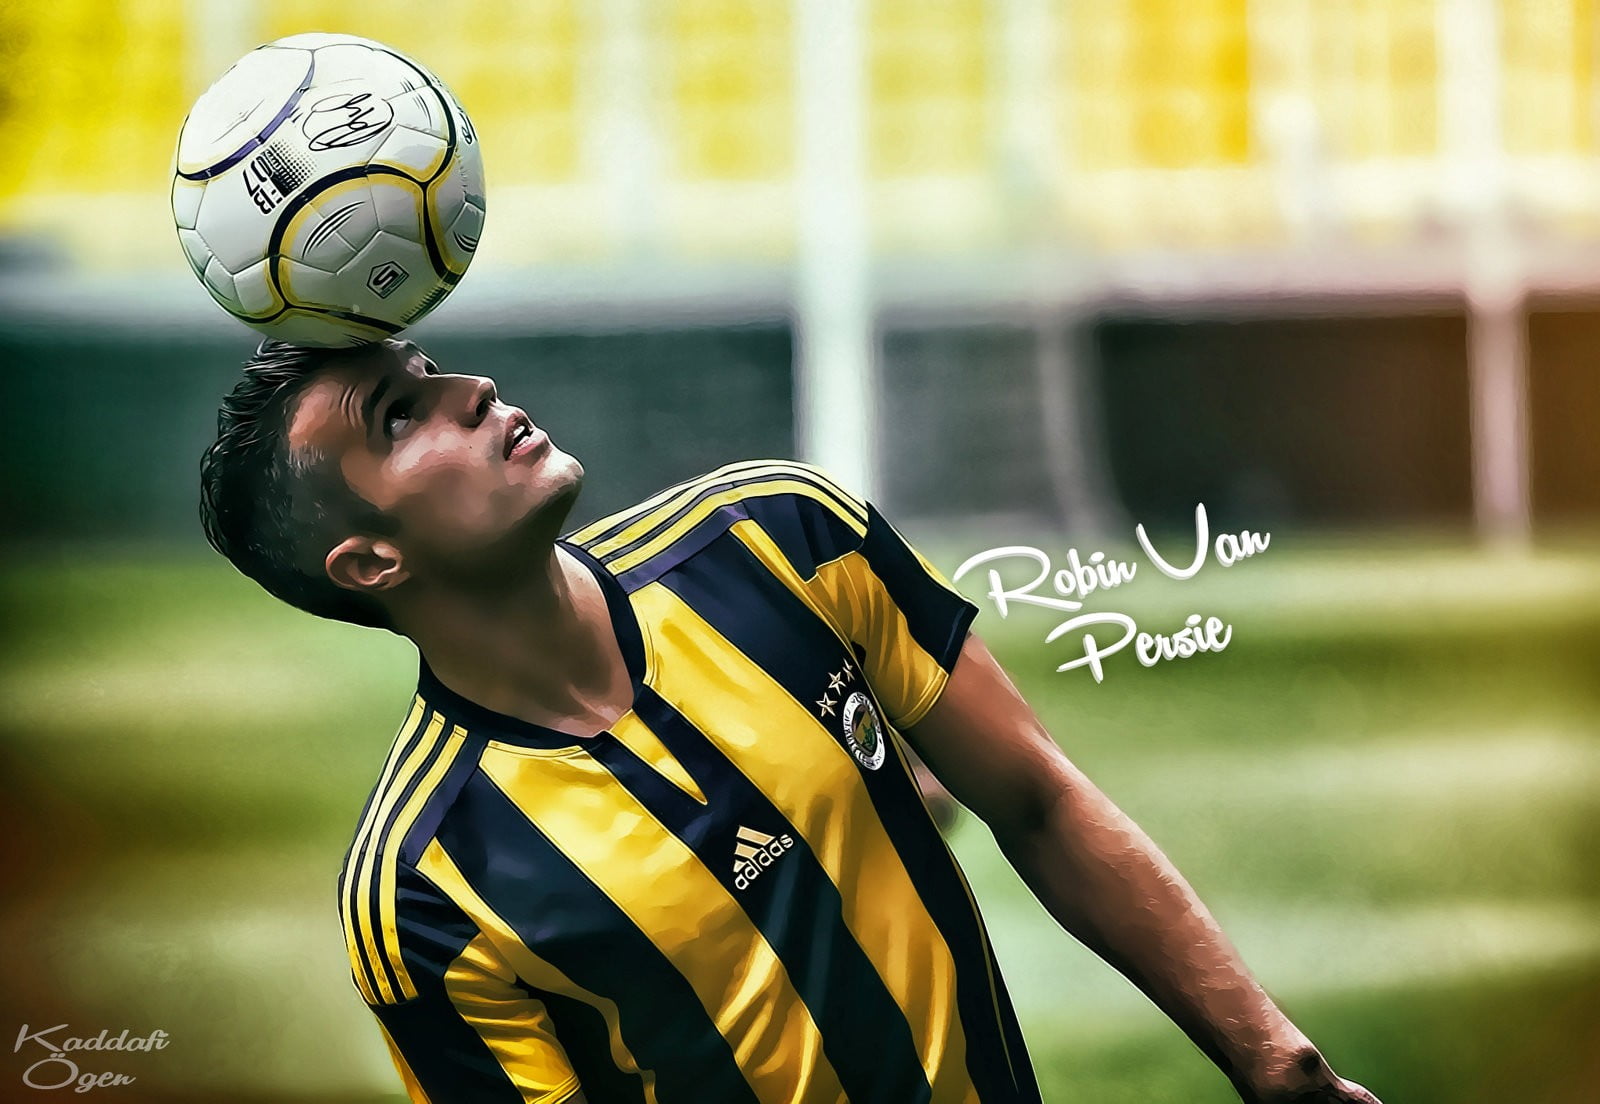 Robin Van Persie photo, Robin van Persie, Fenerbahçe, footballers, soccer